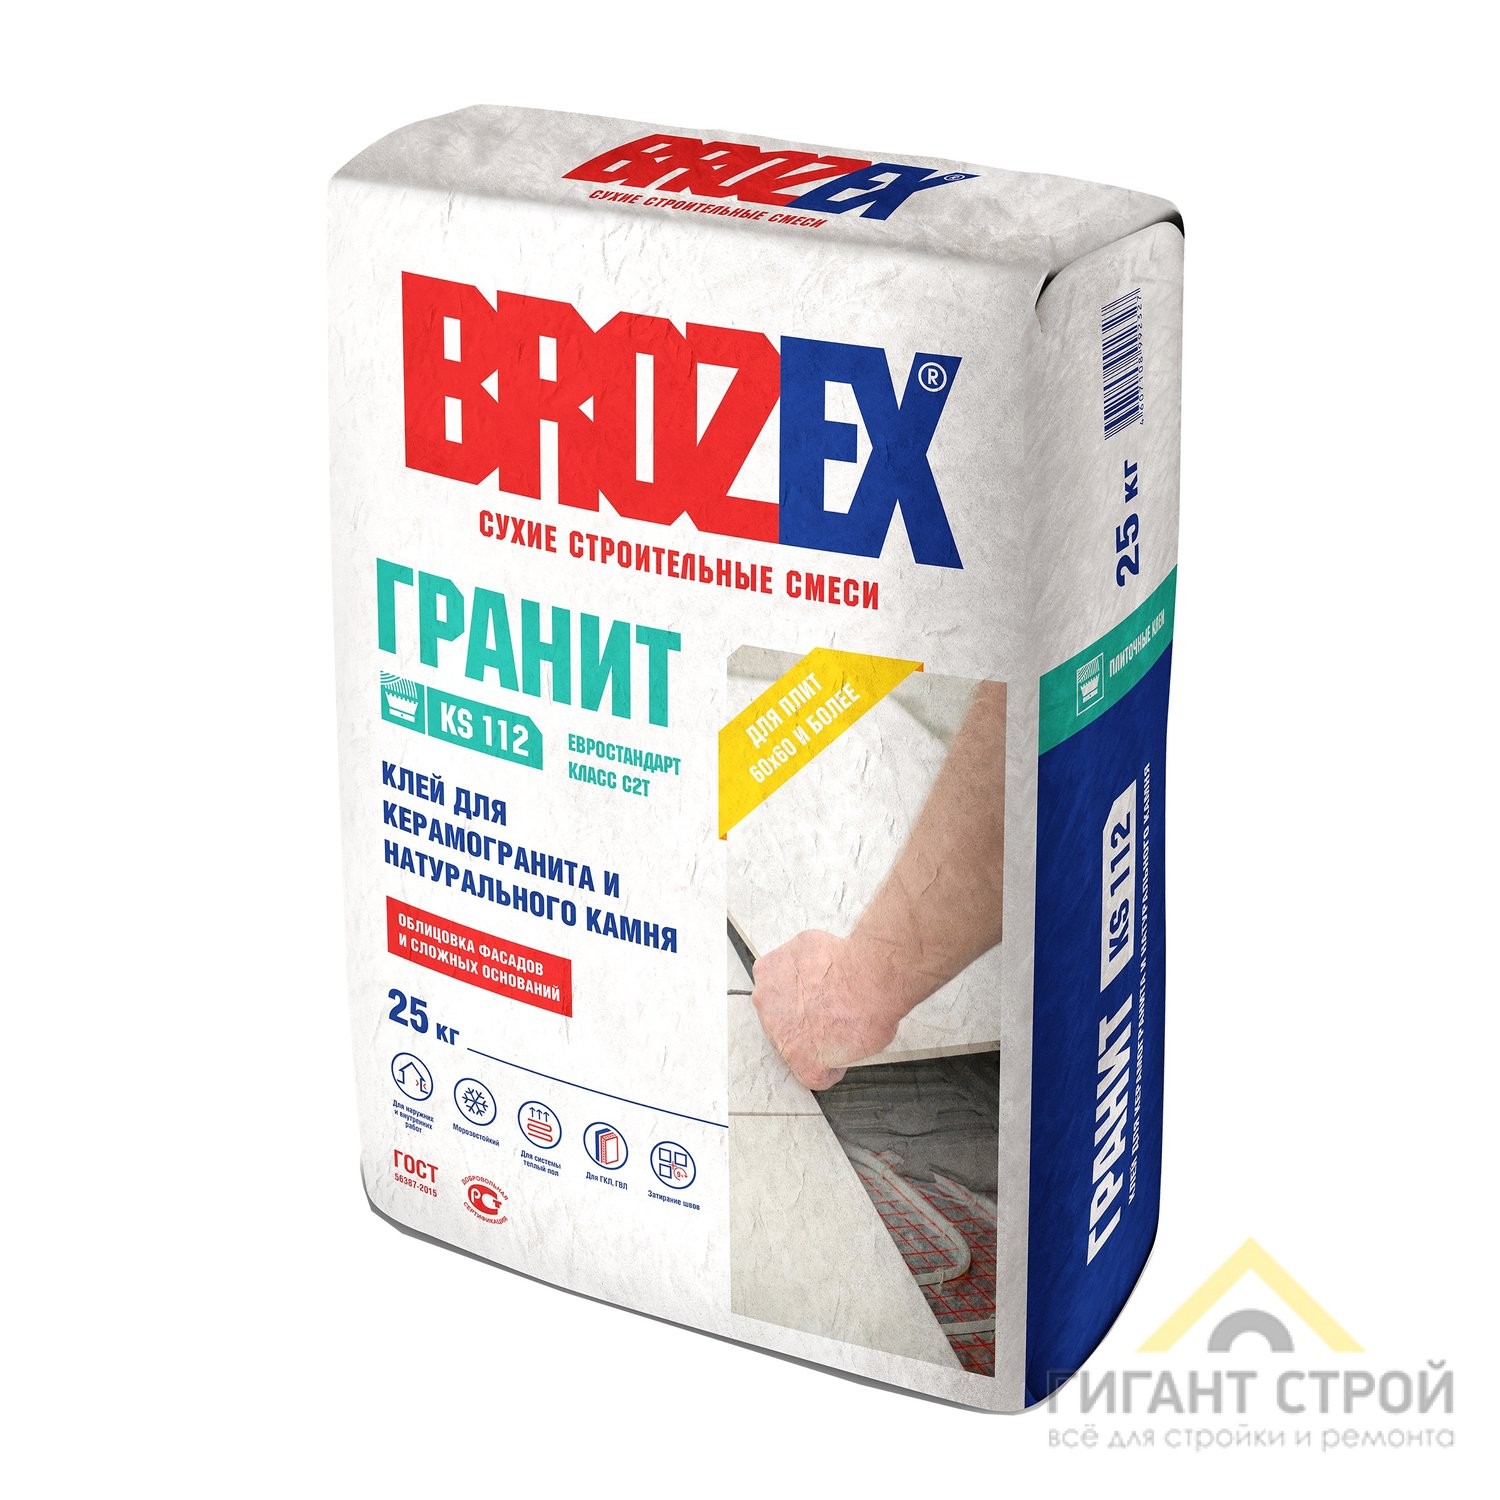 Клей для плитки BROZEX КS-112 Гранит, 25 кг. (система тёплый пол)